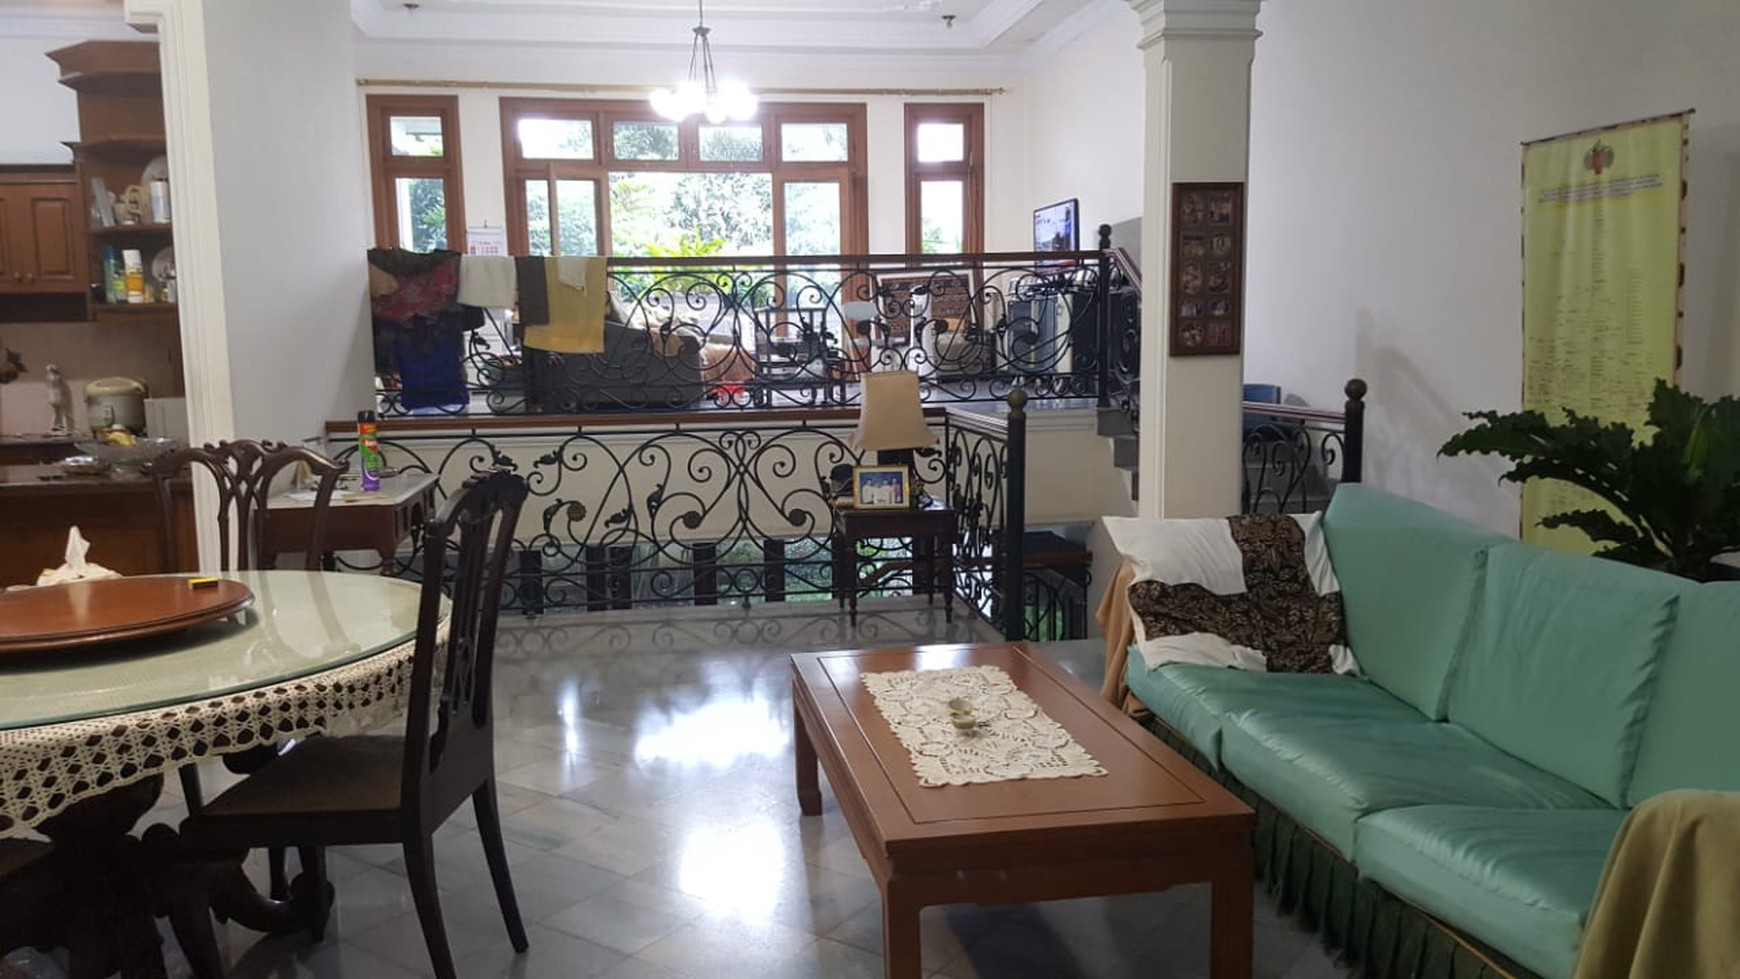 Rumah rapih, siap huni, lokasi strategis di Bintaro - Jakarta Selatan